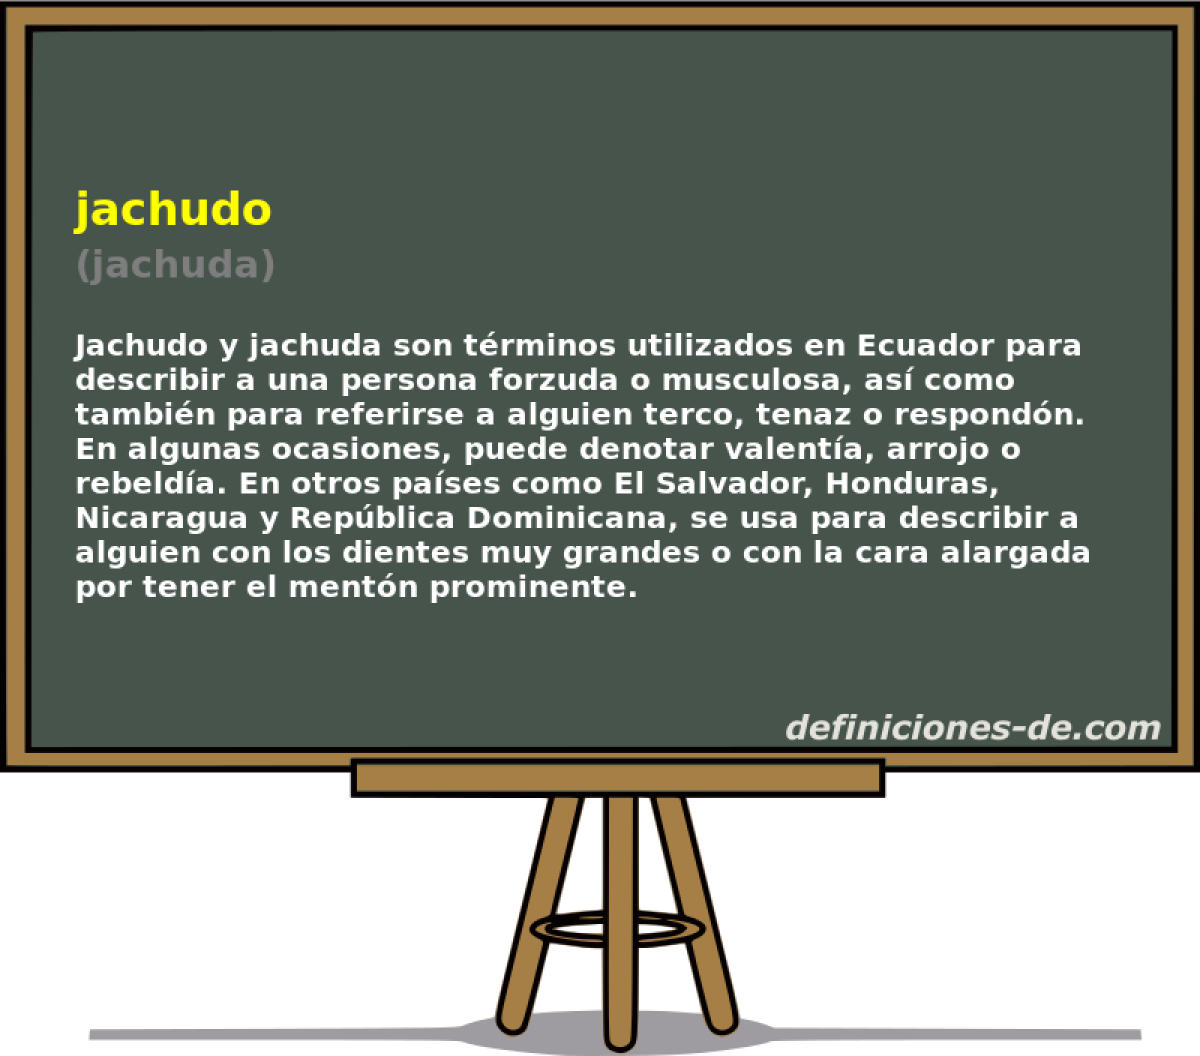 jachudo (jachuda)